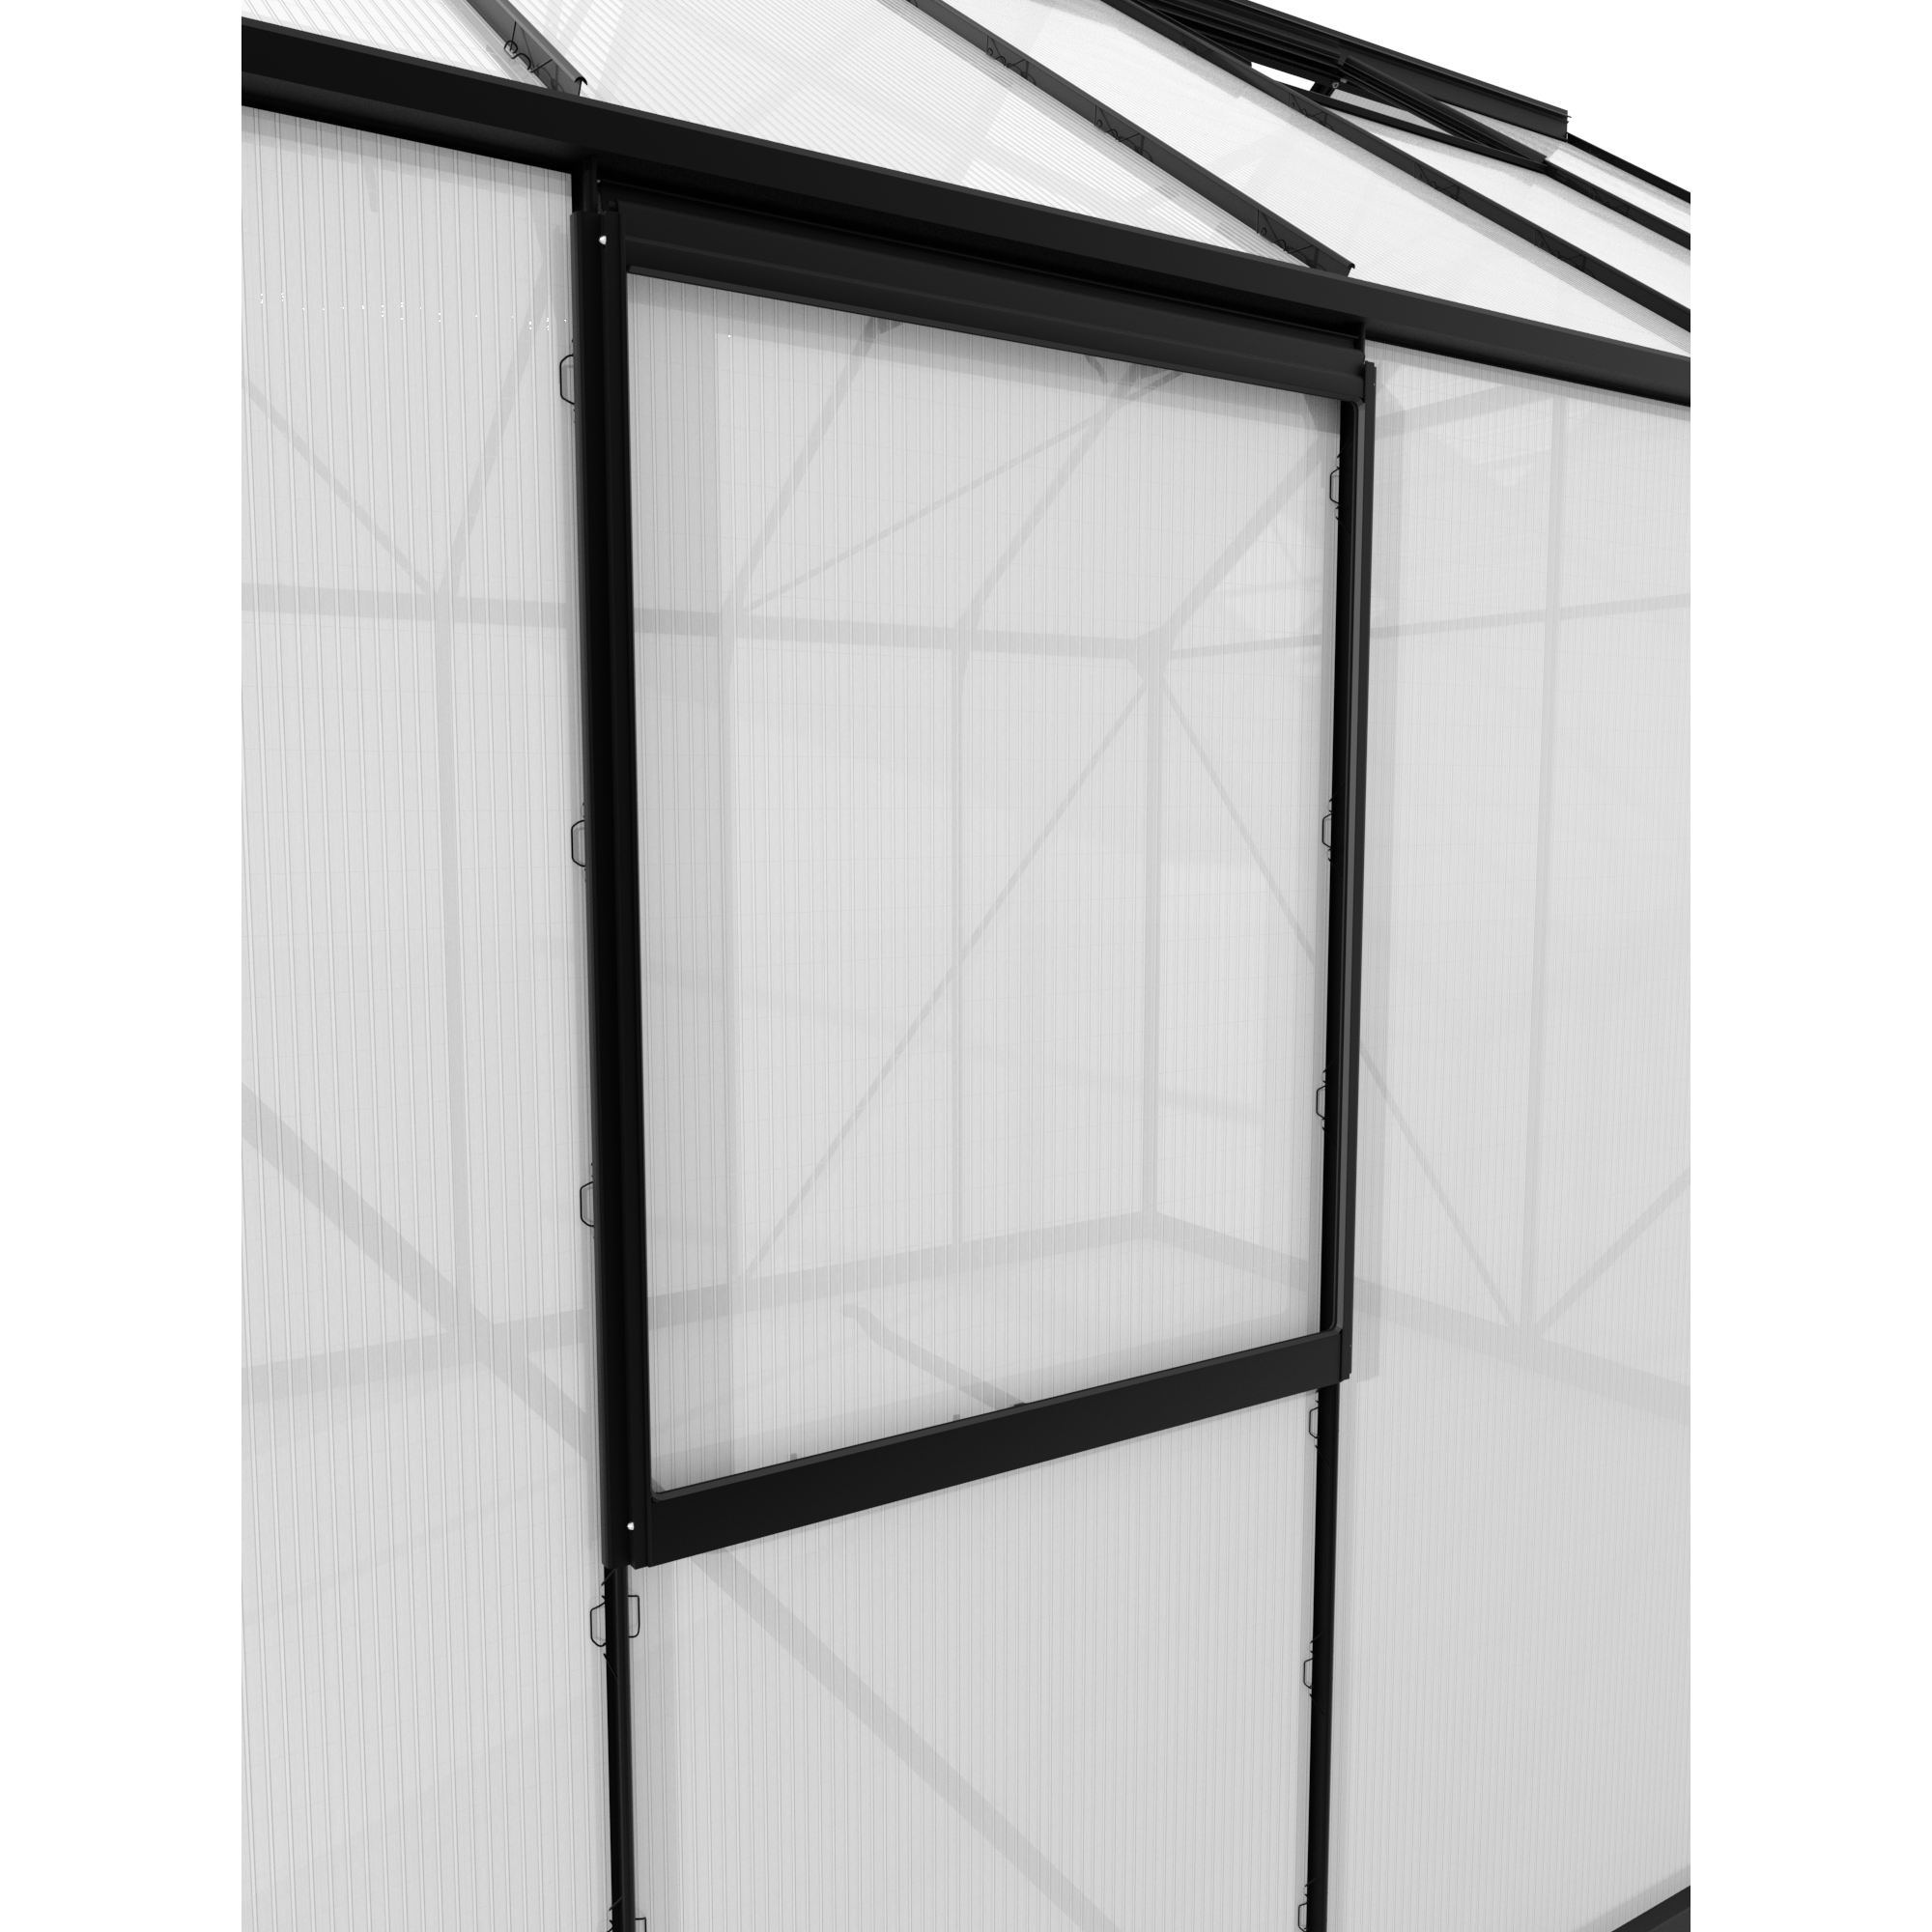 Alu-Seitenfenster 'V' schwarz 59 x 79,2 cm für Gewächshäuser + product picture